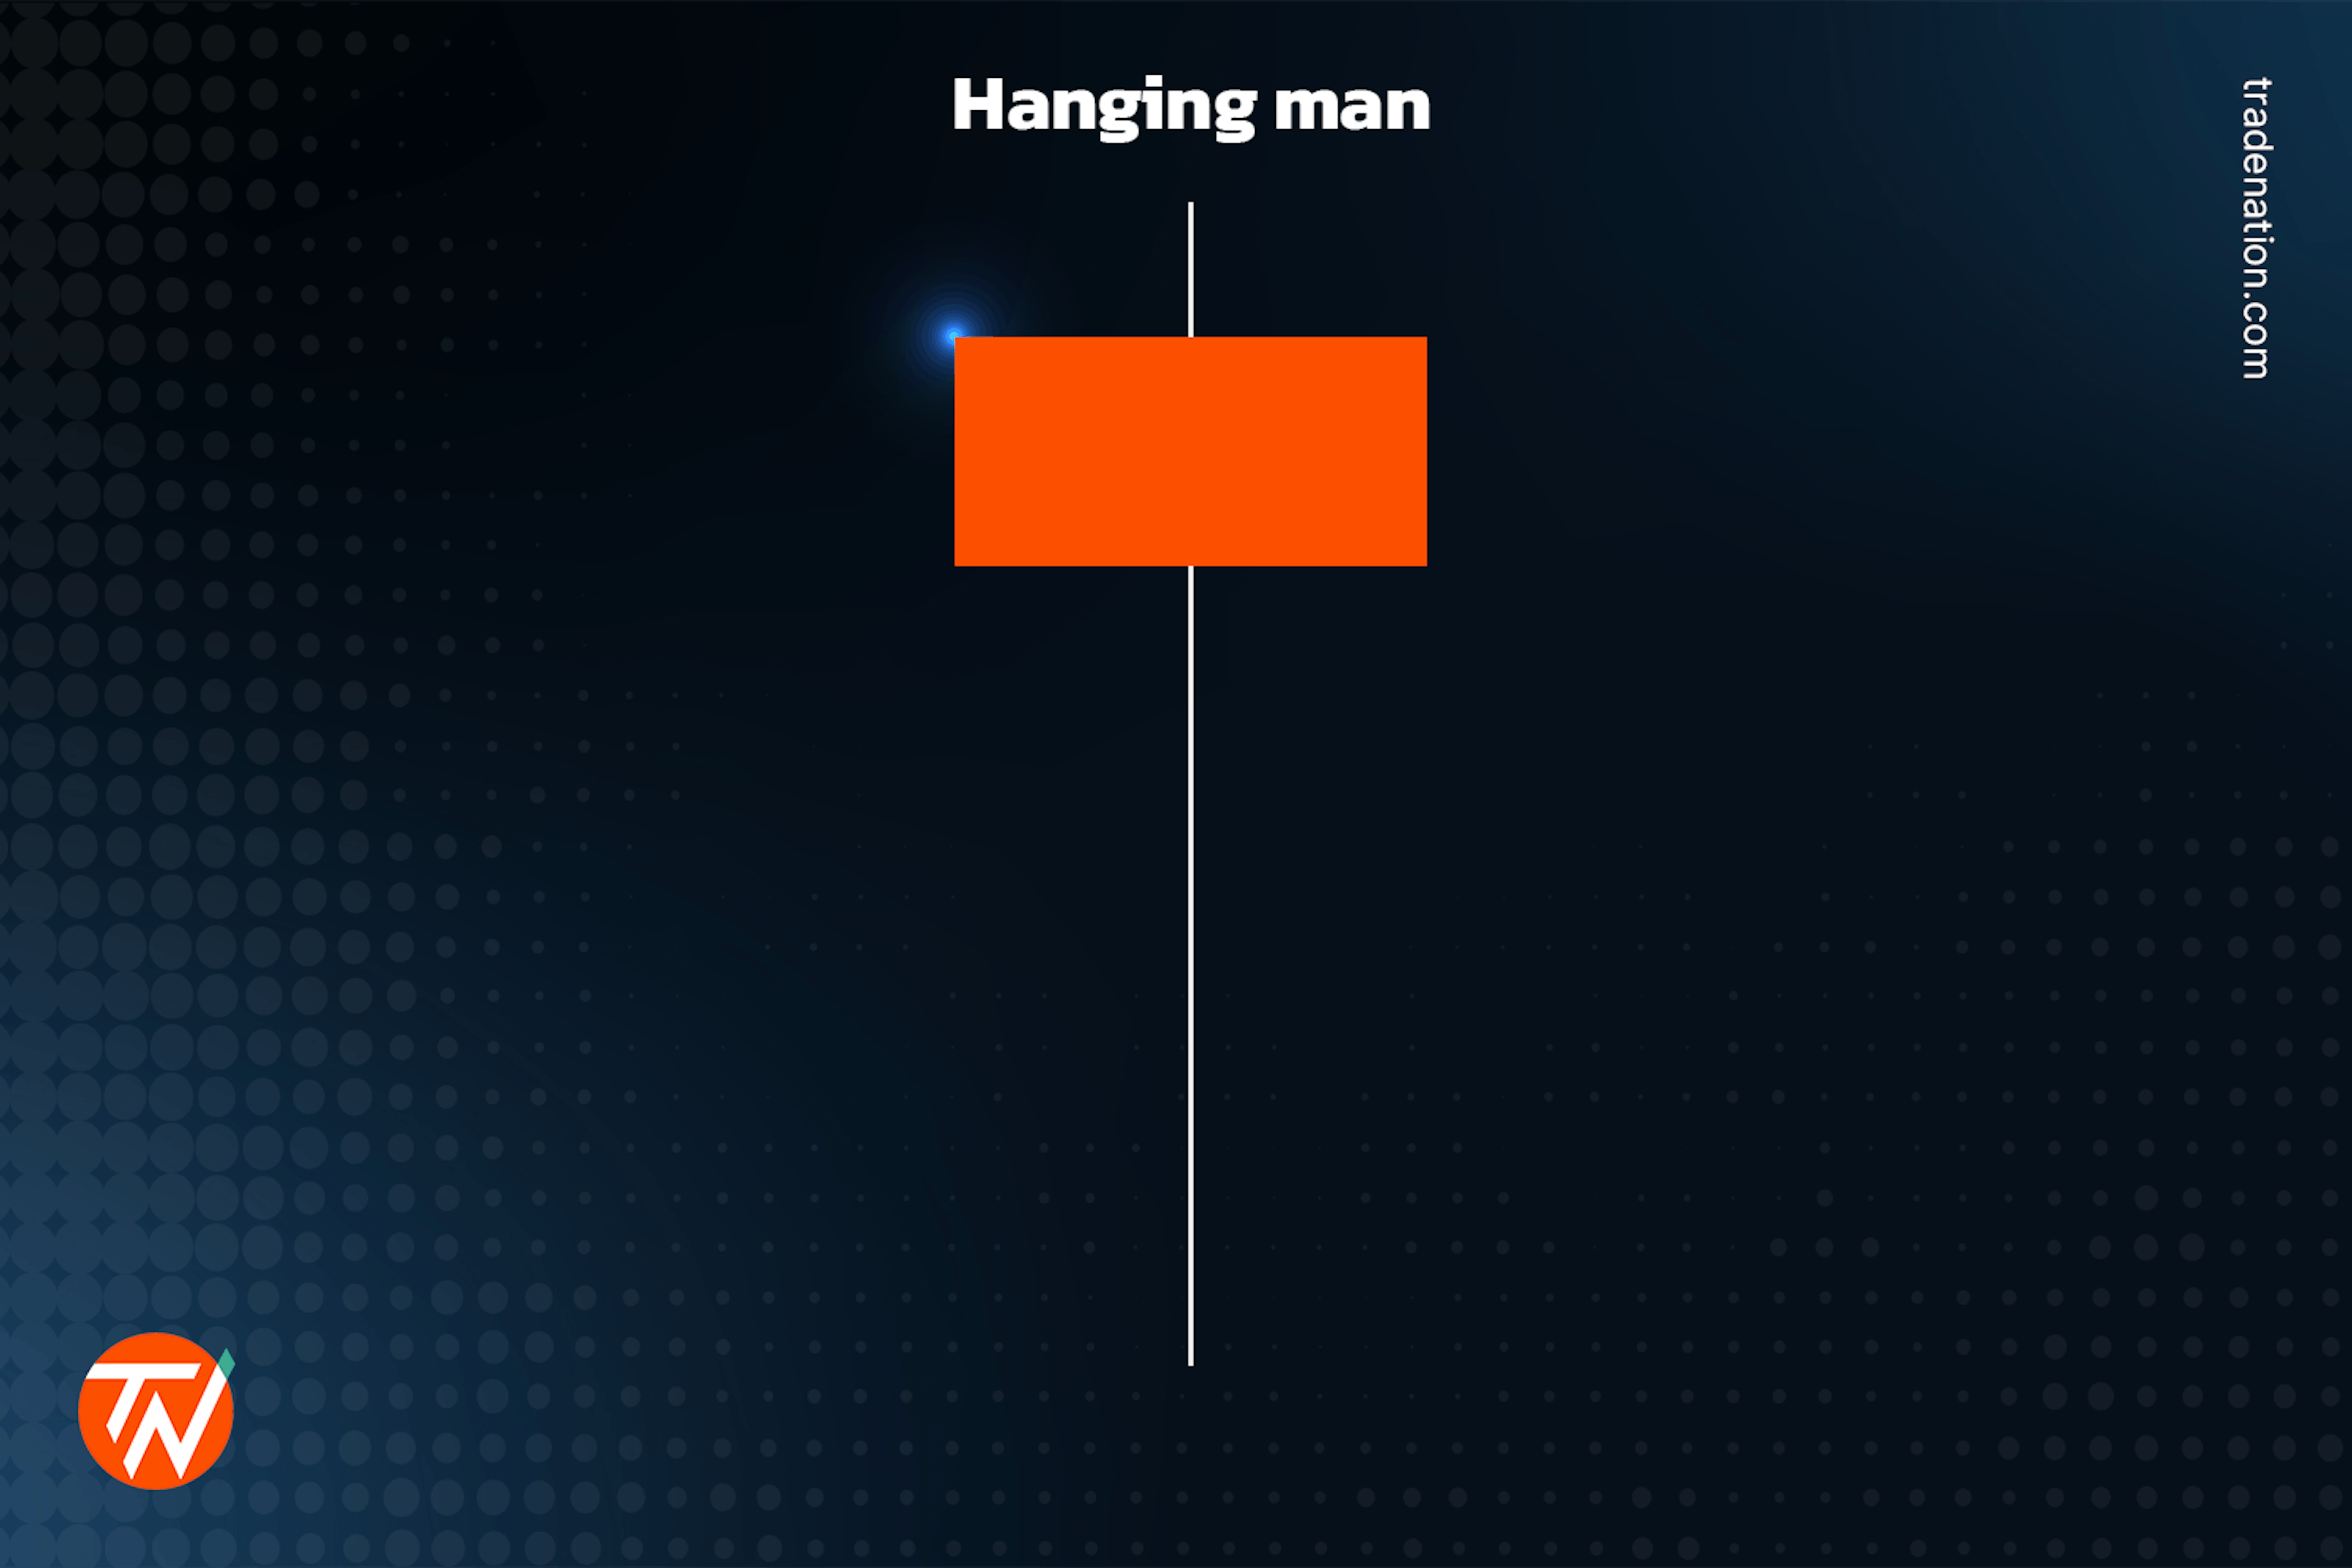 Hanging man candlestick